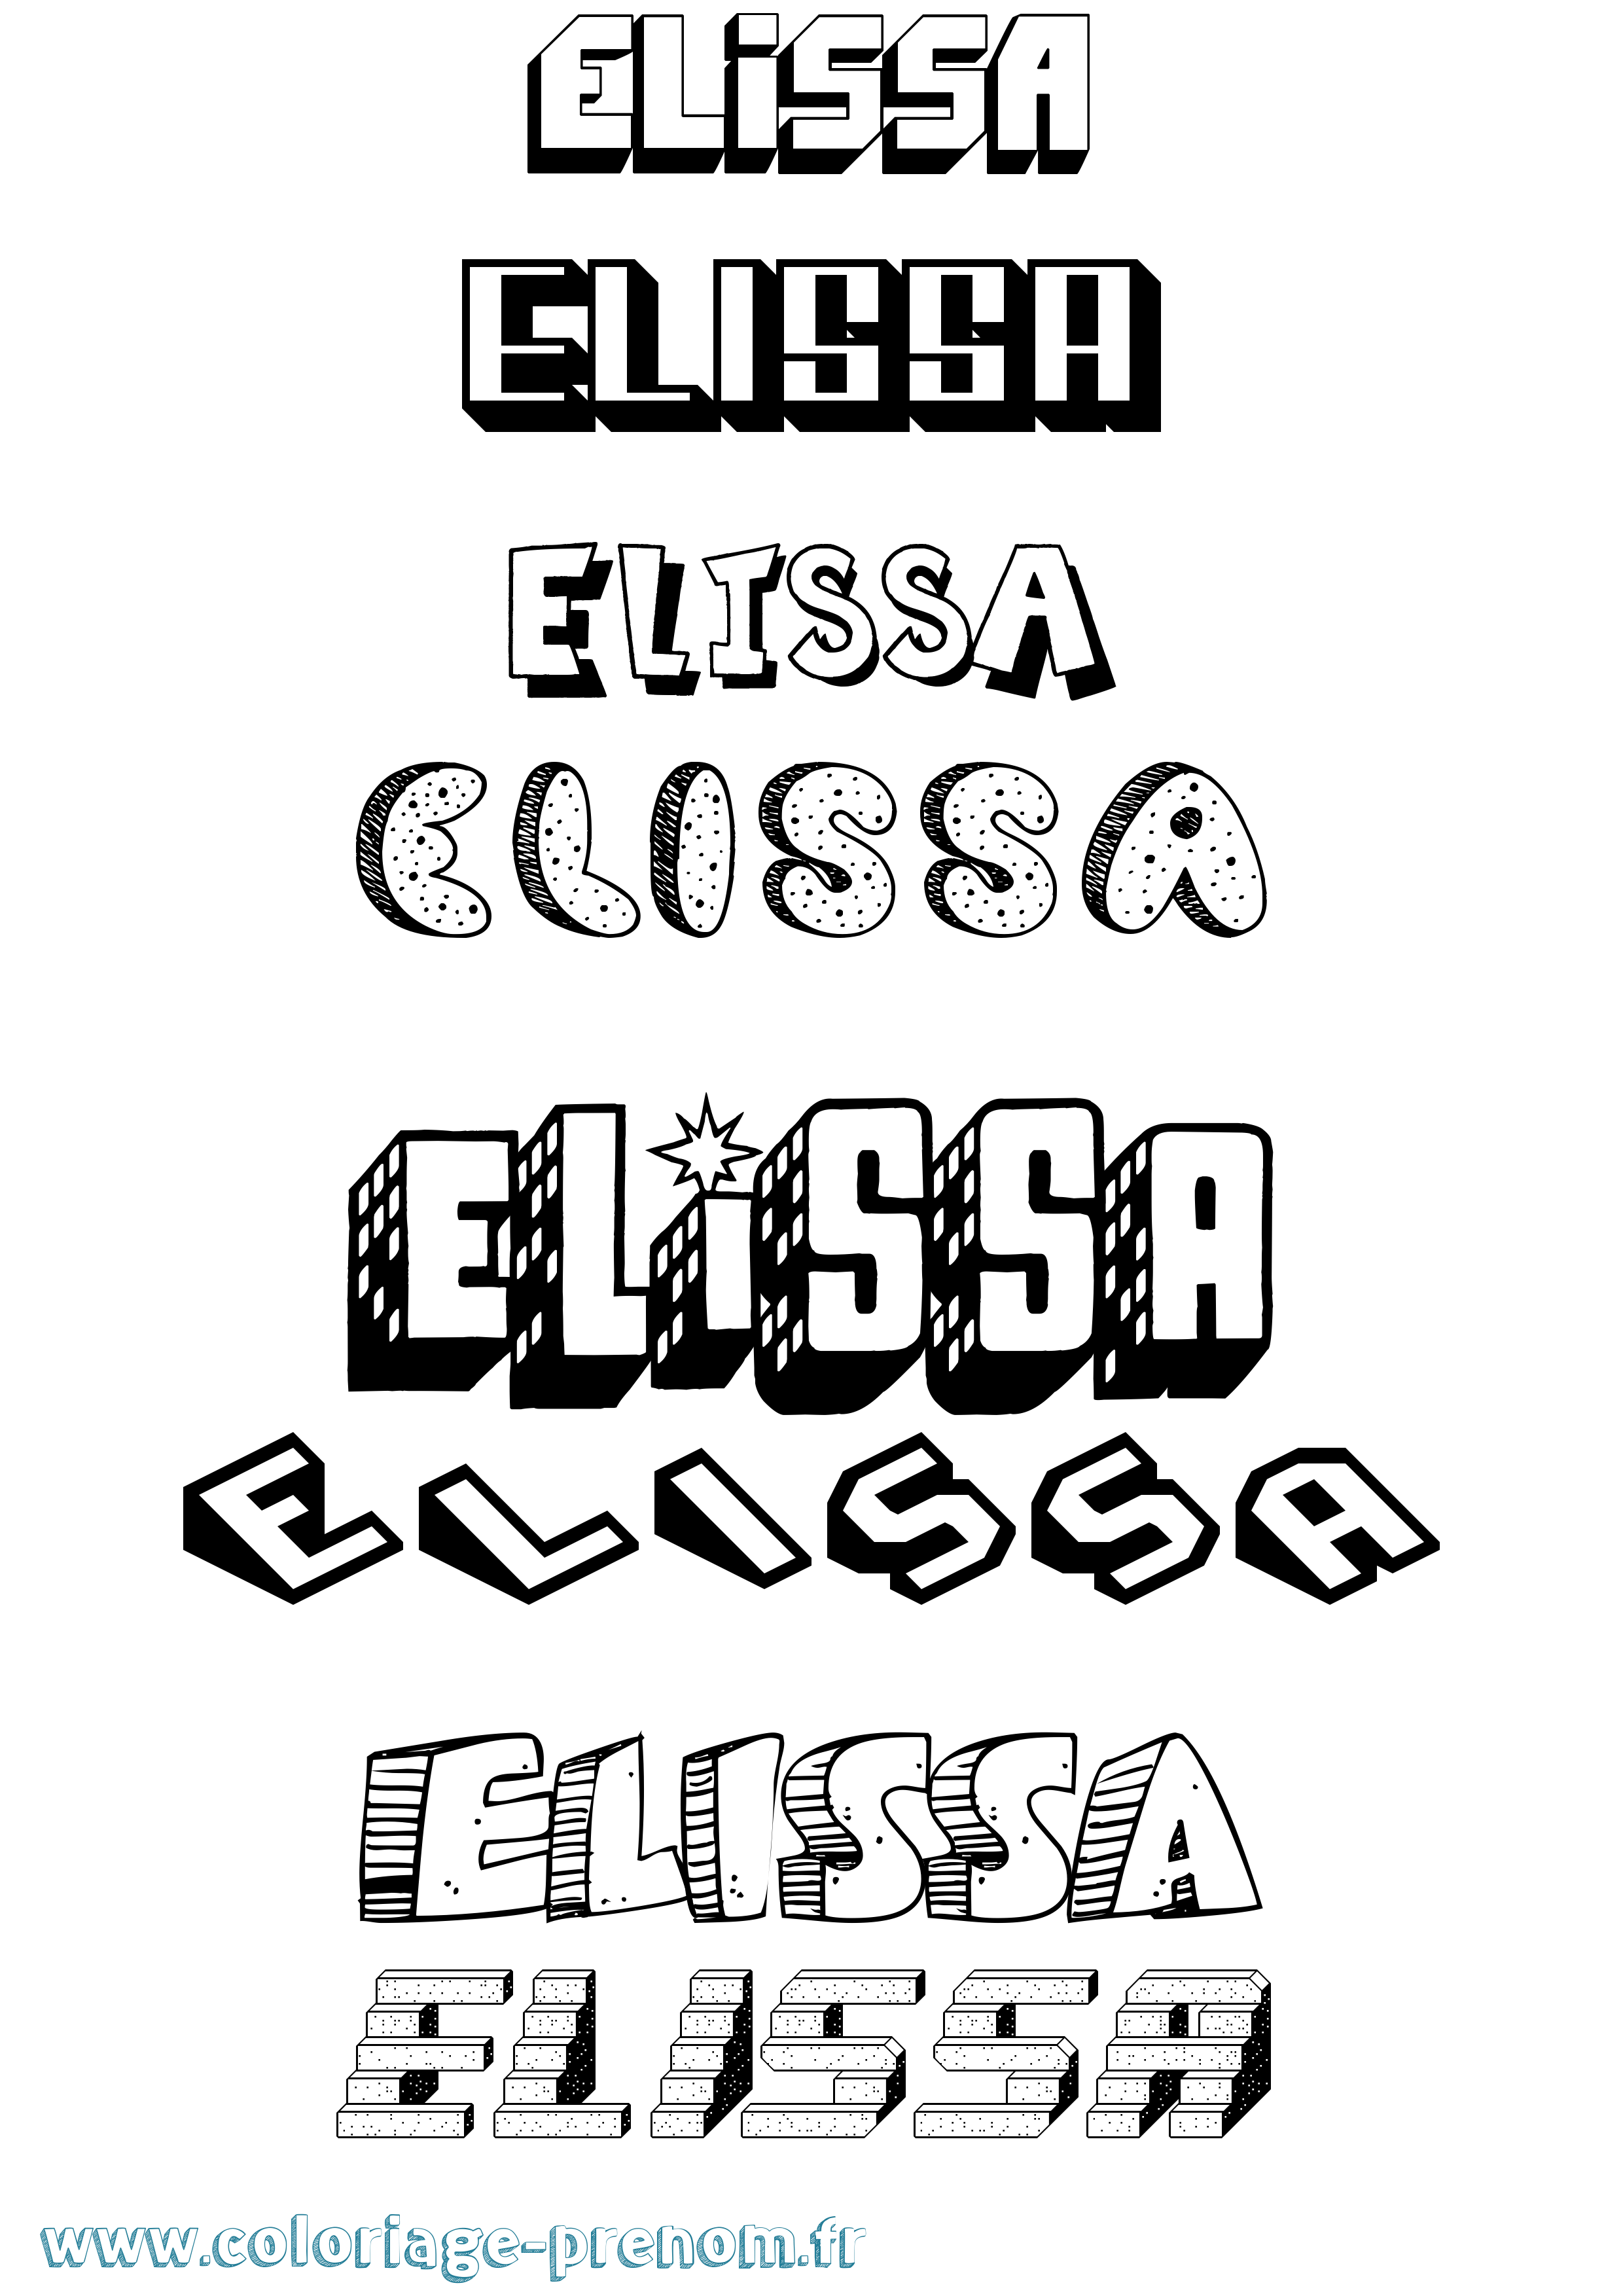 Coloriage prénom Elissa Effet 3D